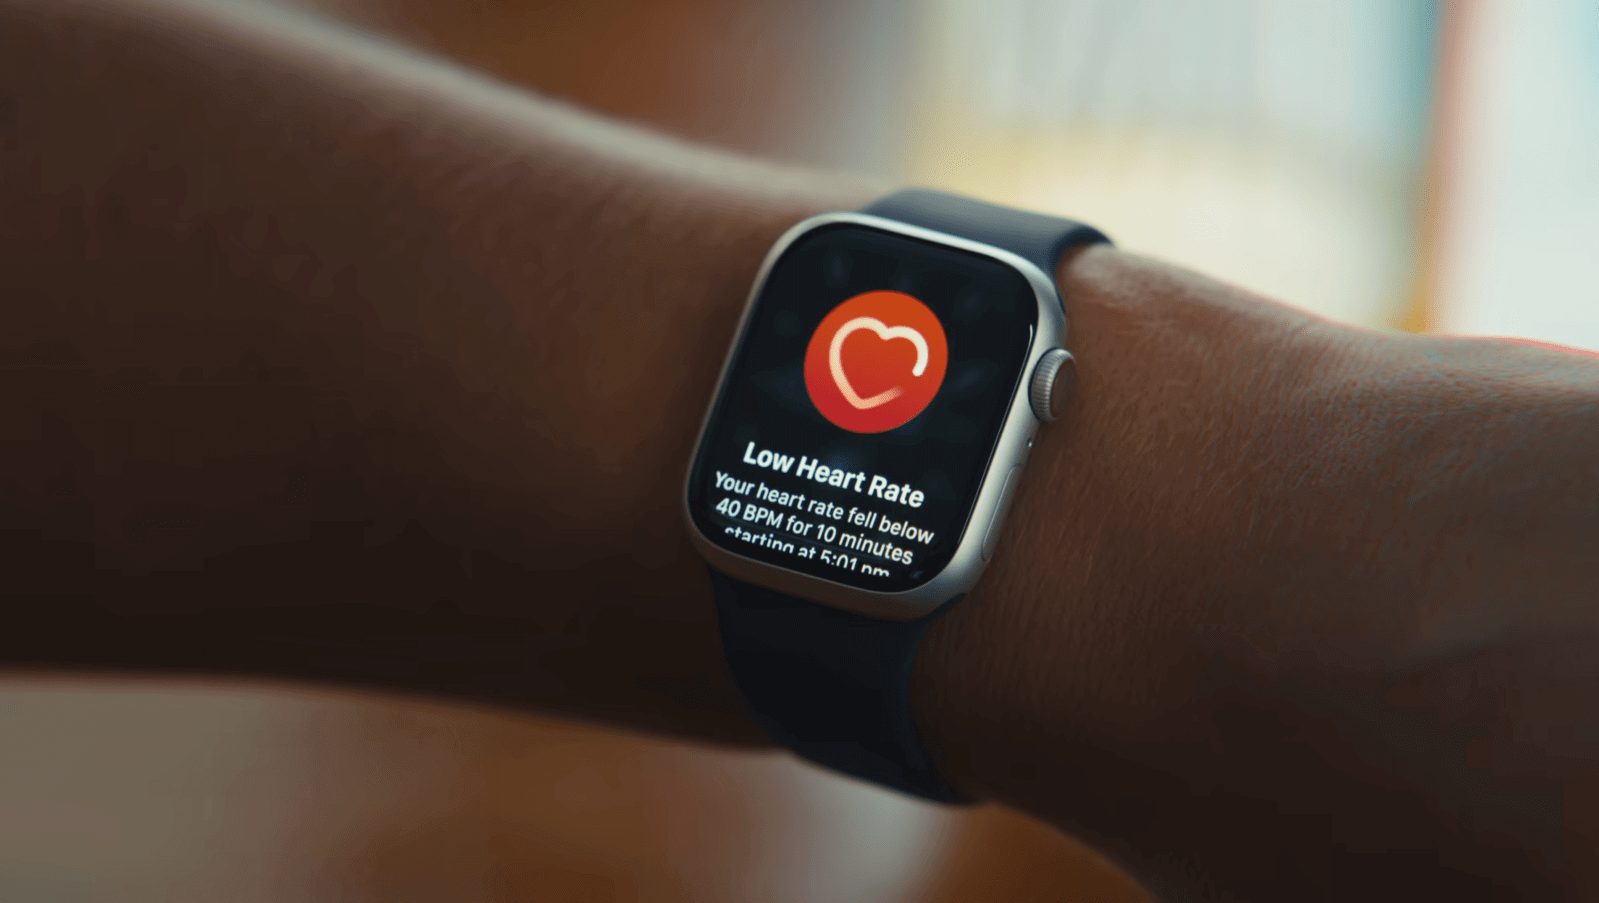 Цифровая опека Apple Watch в отношении здоровья демонстрируется в последних рекламных роликах, основанных на реальных событиях